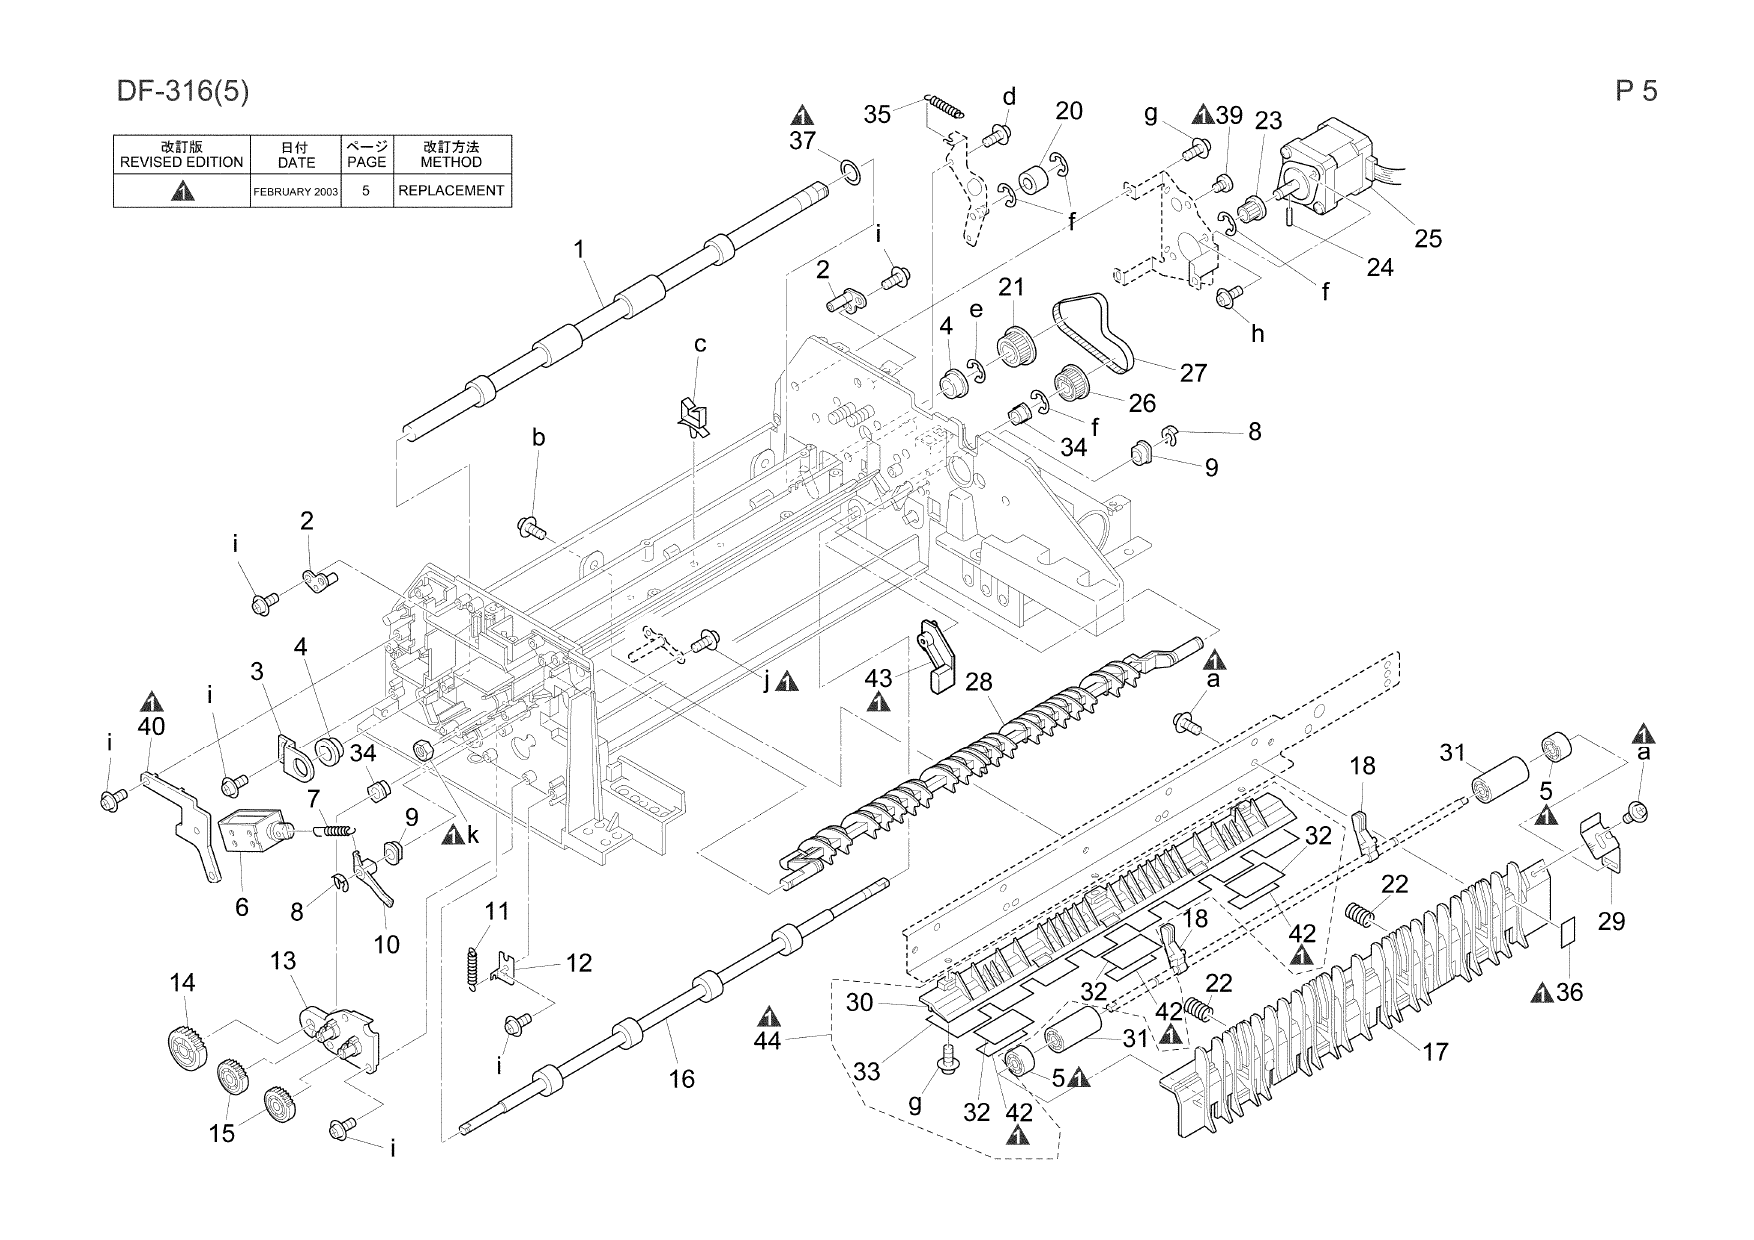 Konica-Minolta Options DF-316 Parts Manual-3